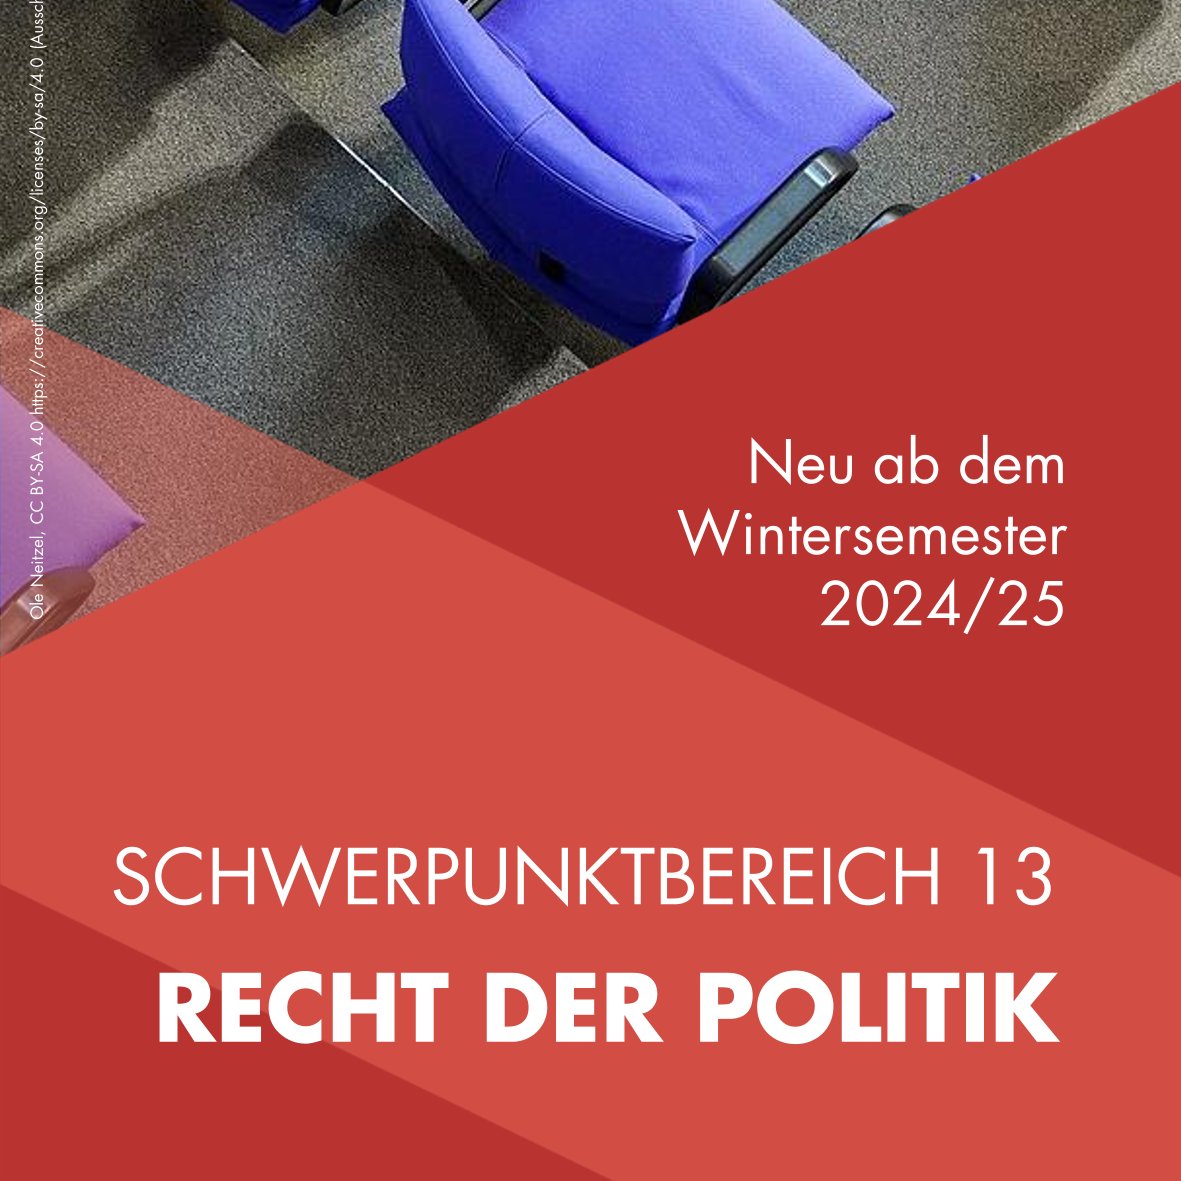 Ab dem WS24/25 kann man an der Juristenfakultät der @UniLeipzig 'Recht der Politik' studieren. Ich freue mich auf Vorlesungen zum Parteien- und Wahlrecht und zur Verfassungstheorie. Mehr zu Konzept und Curriculum: t1p.de/ofsg7